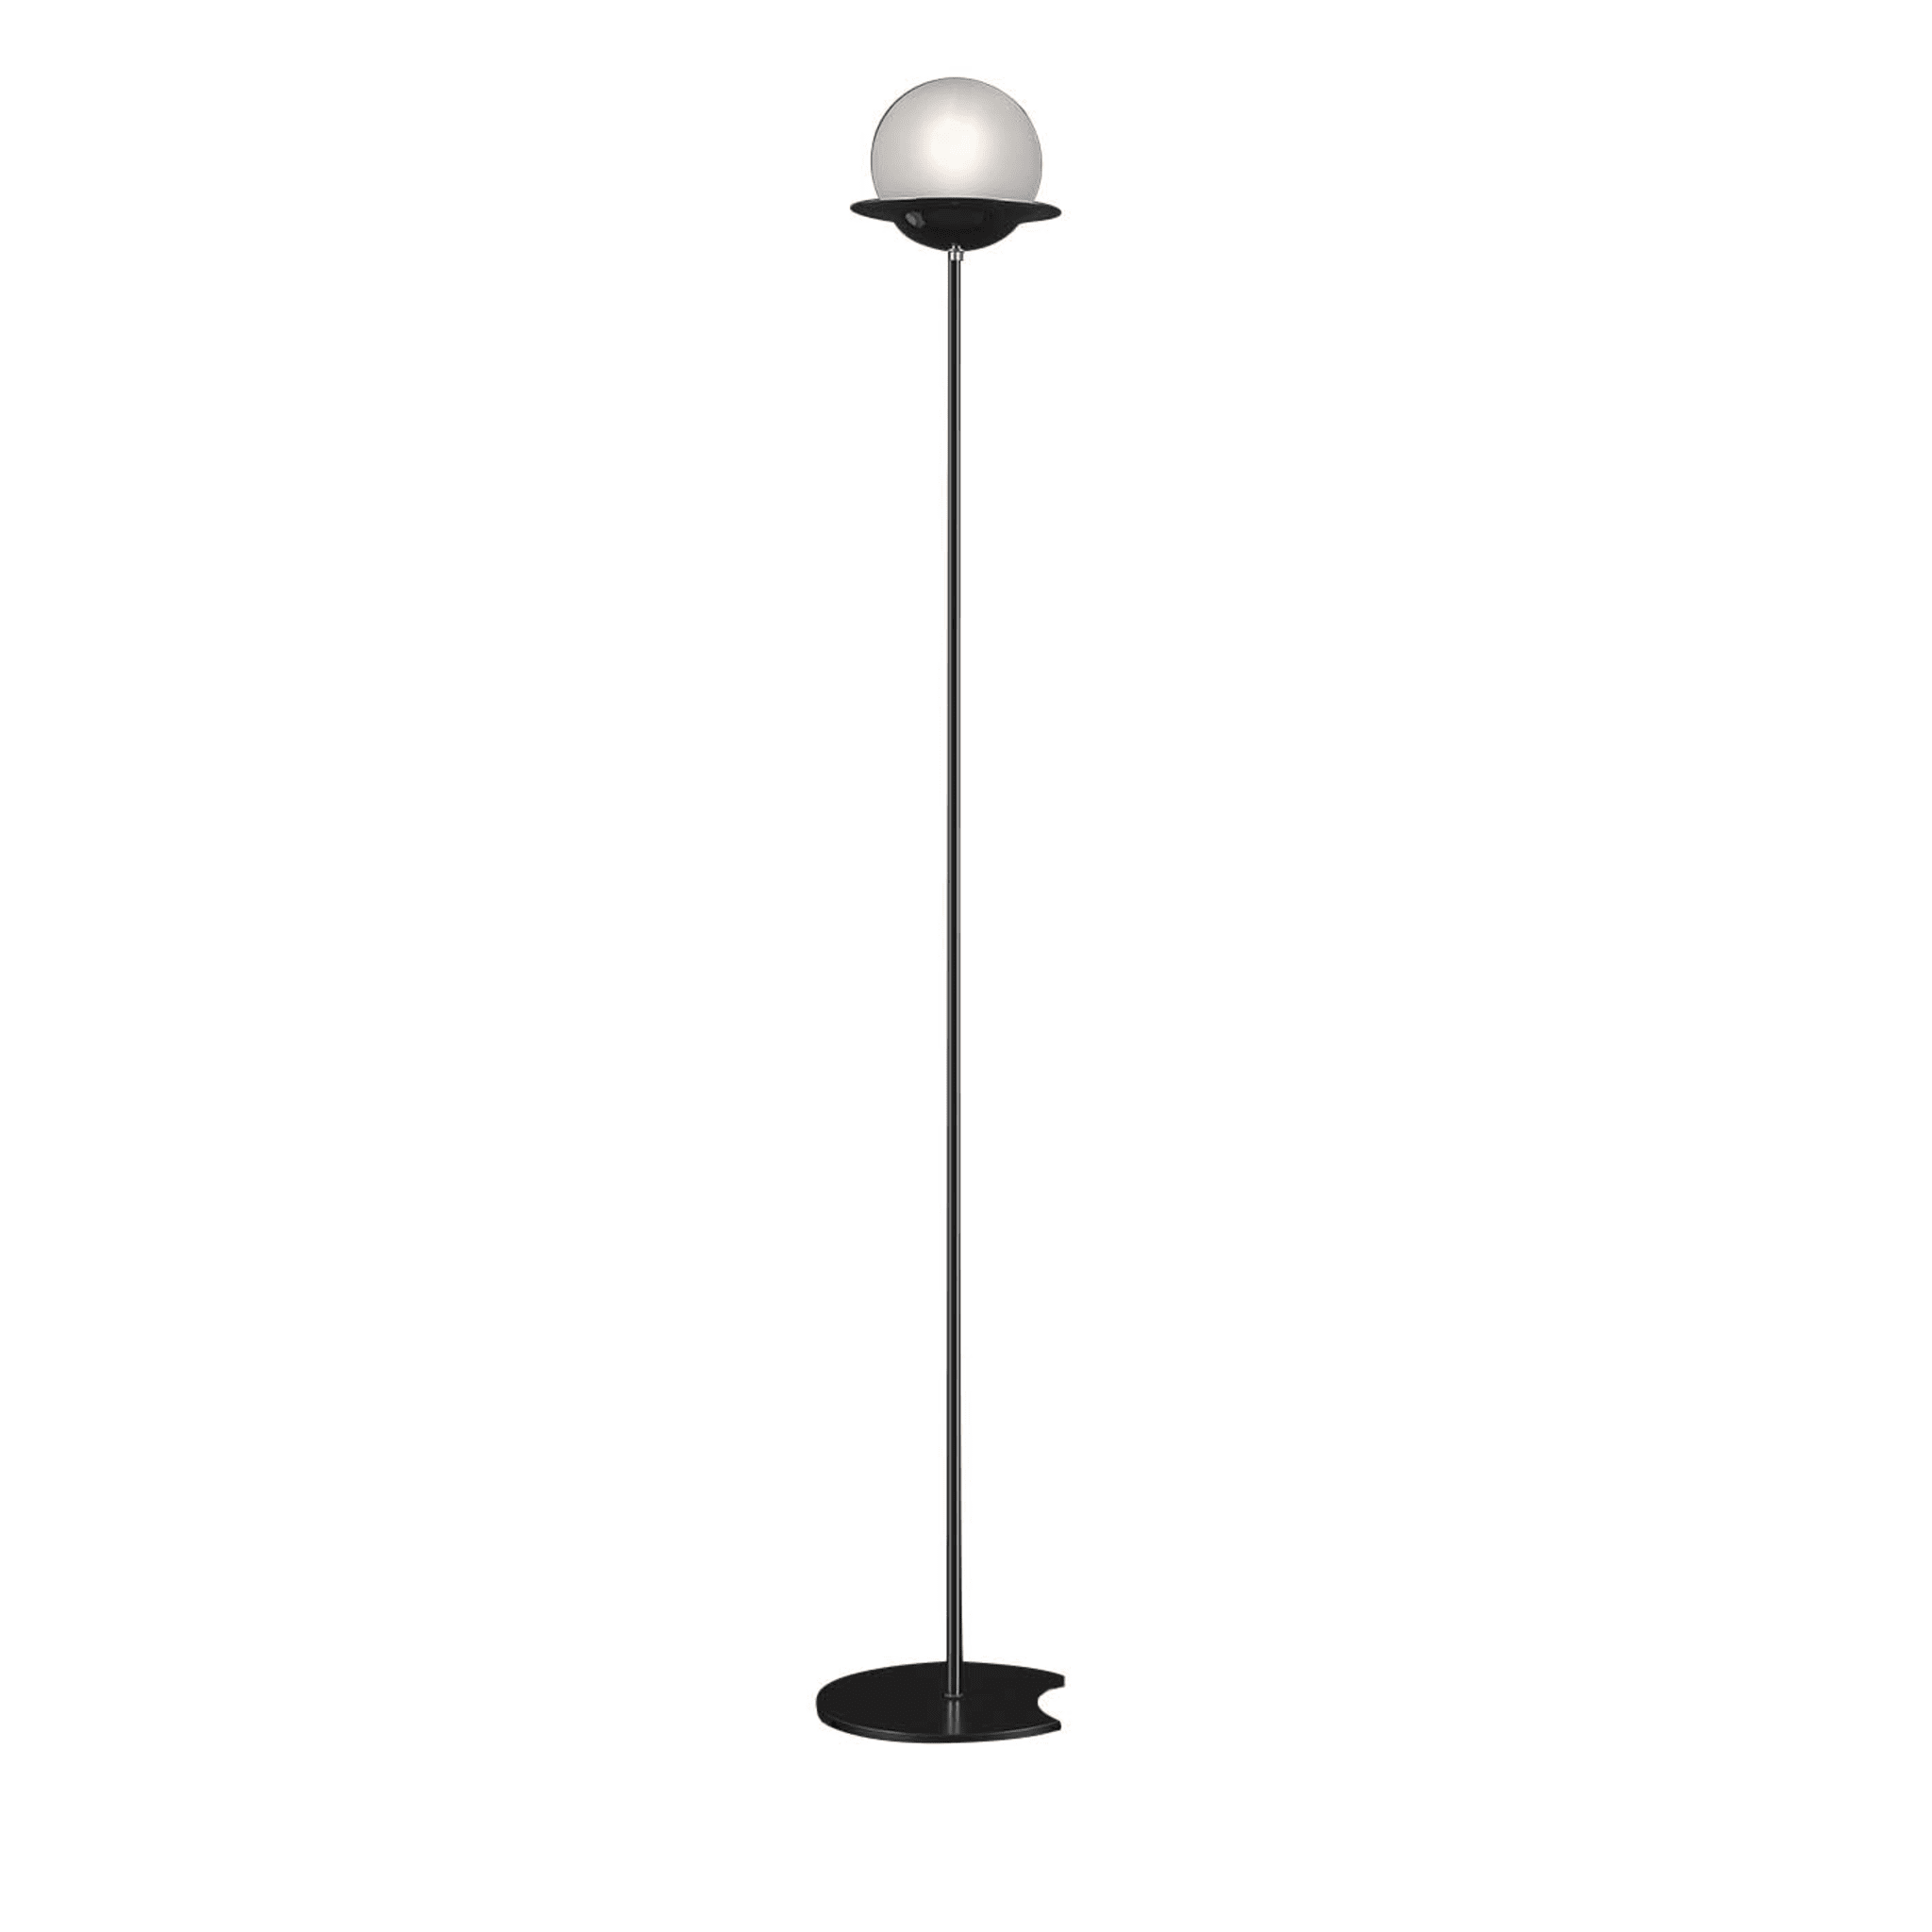 Netta Medium Floor Lamp by Antonia Astori - Main view